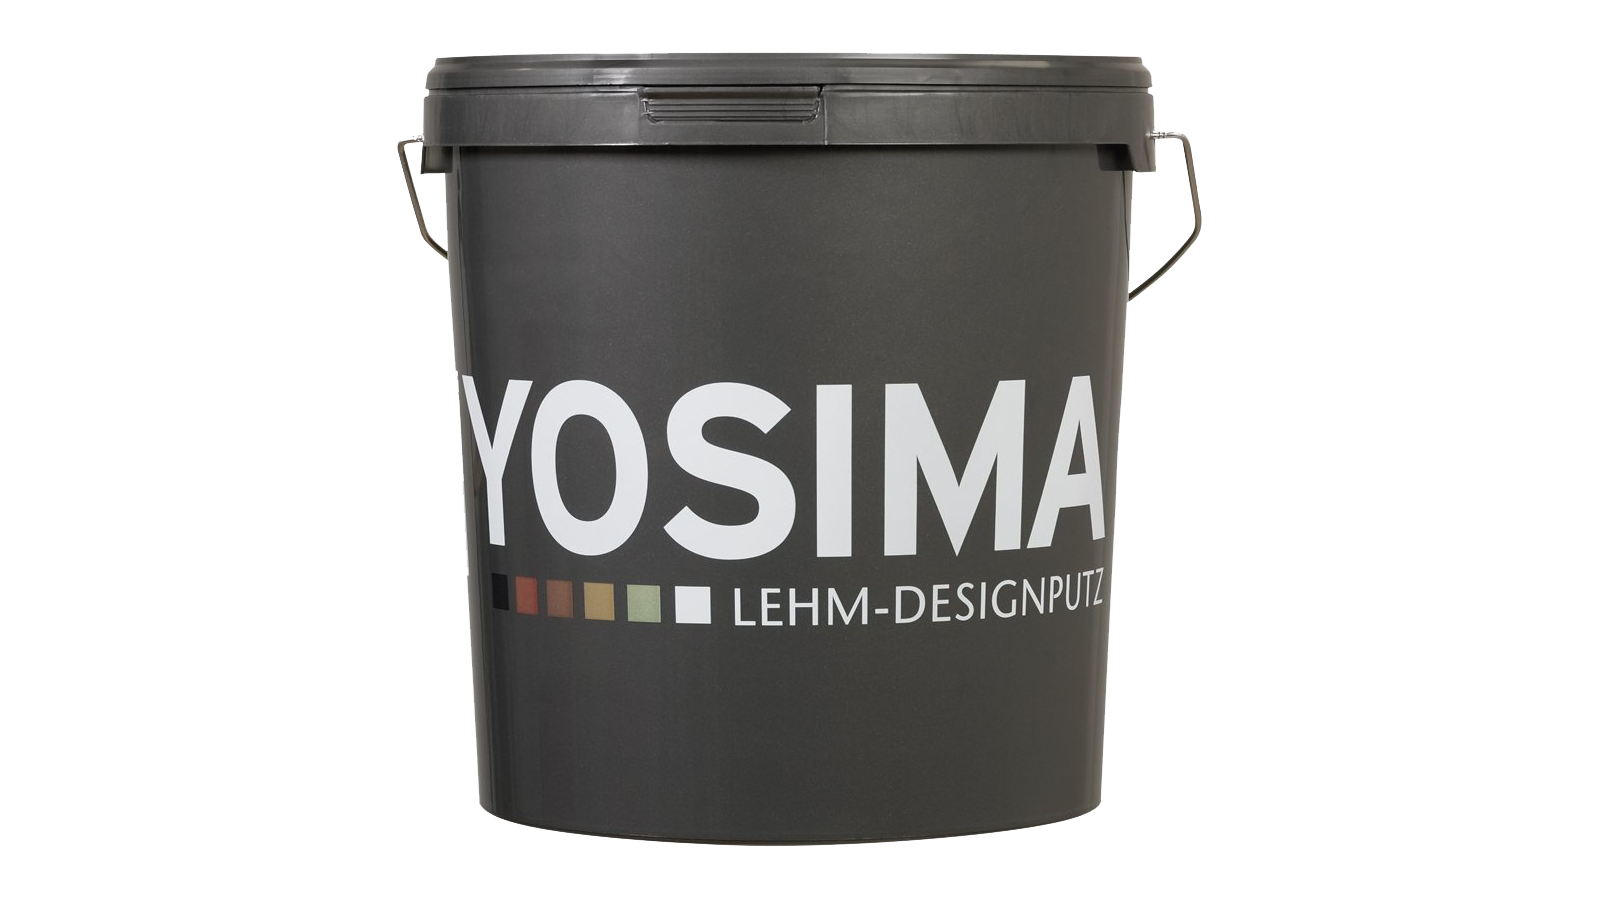 YOSIMA Lehm-Designputz Farbraum Umbra-Natur